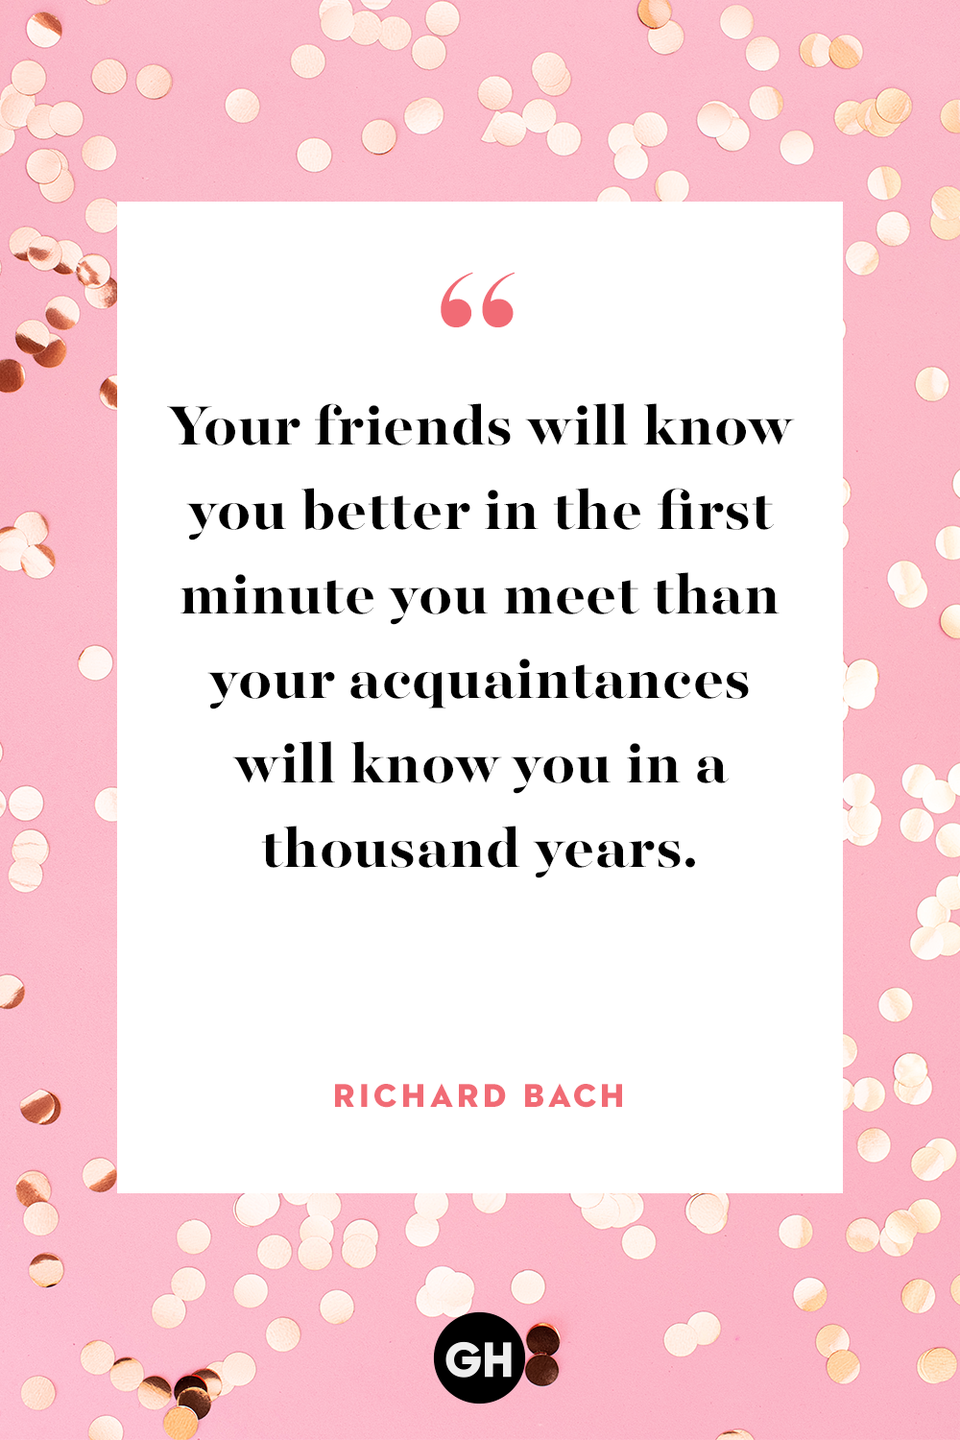 67) Richard Bach